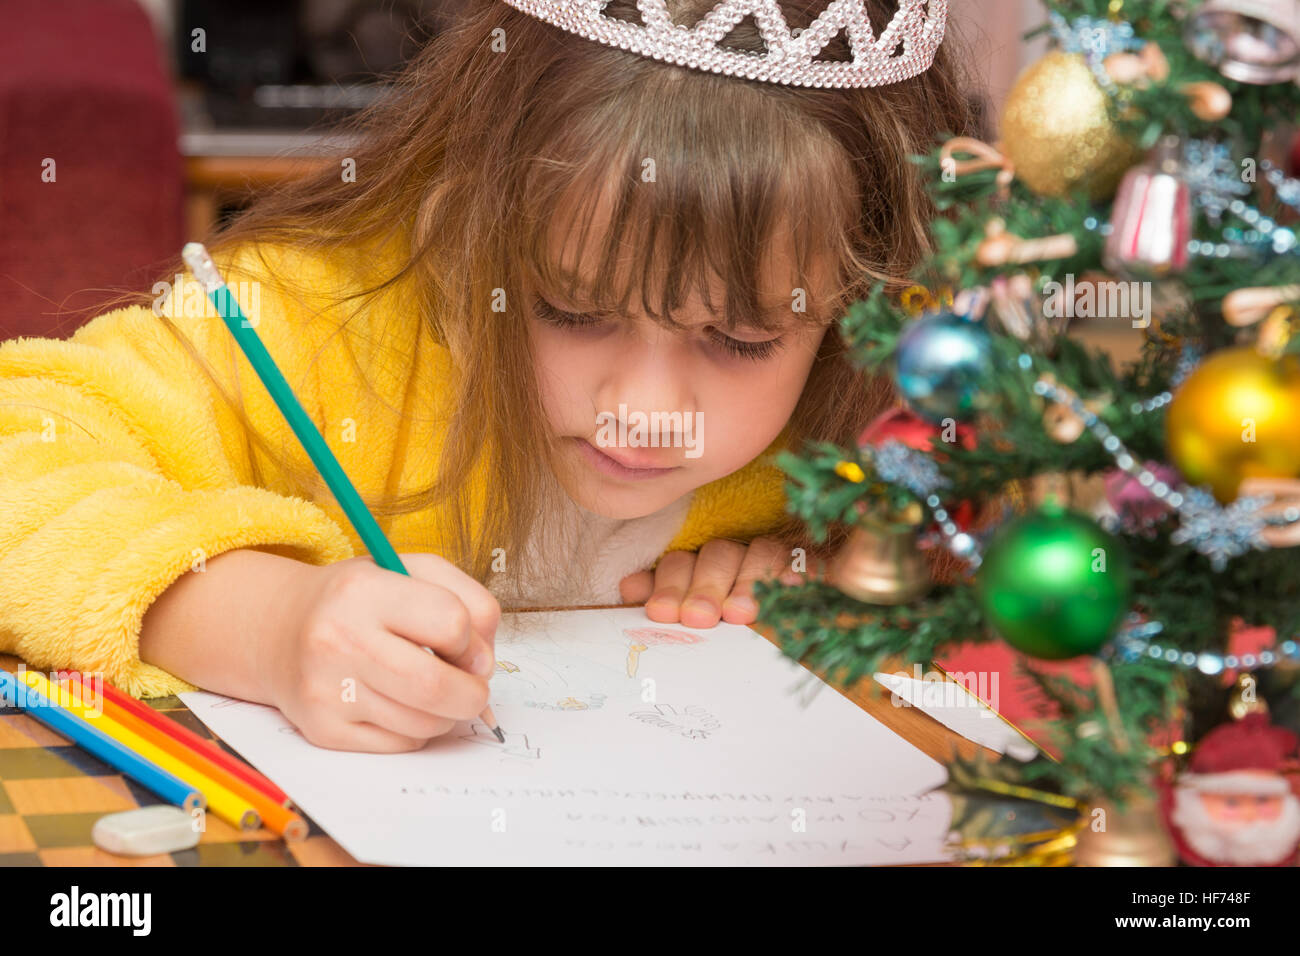 La niña dibuja en una carta a Santa Claus Foto de stock